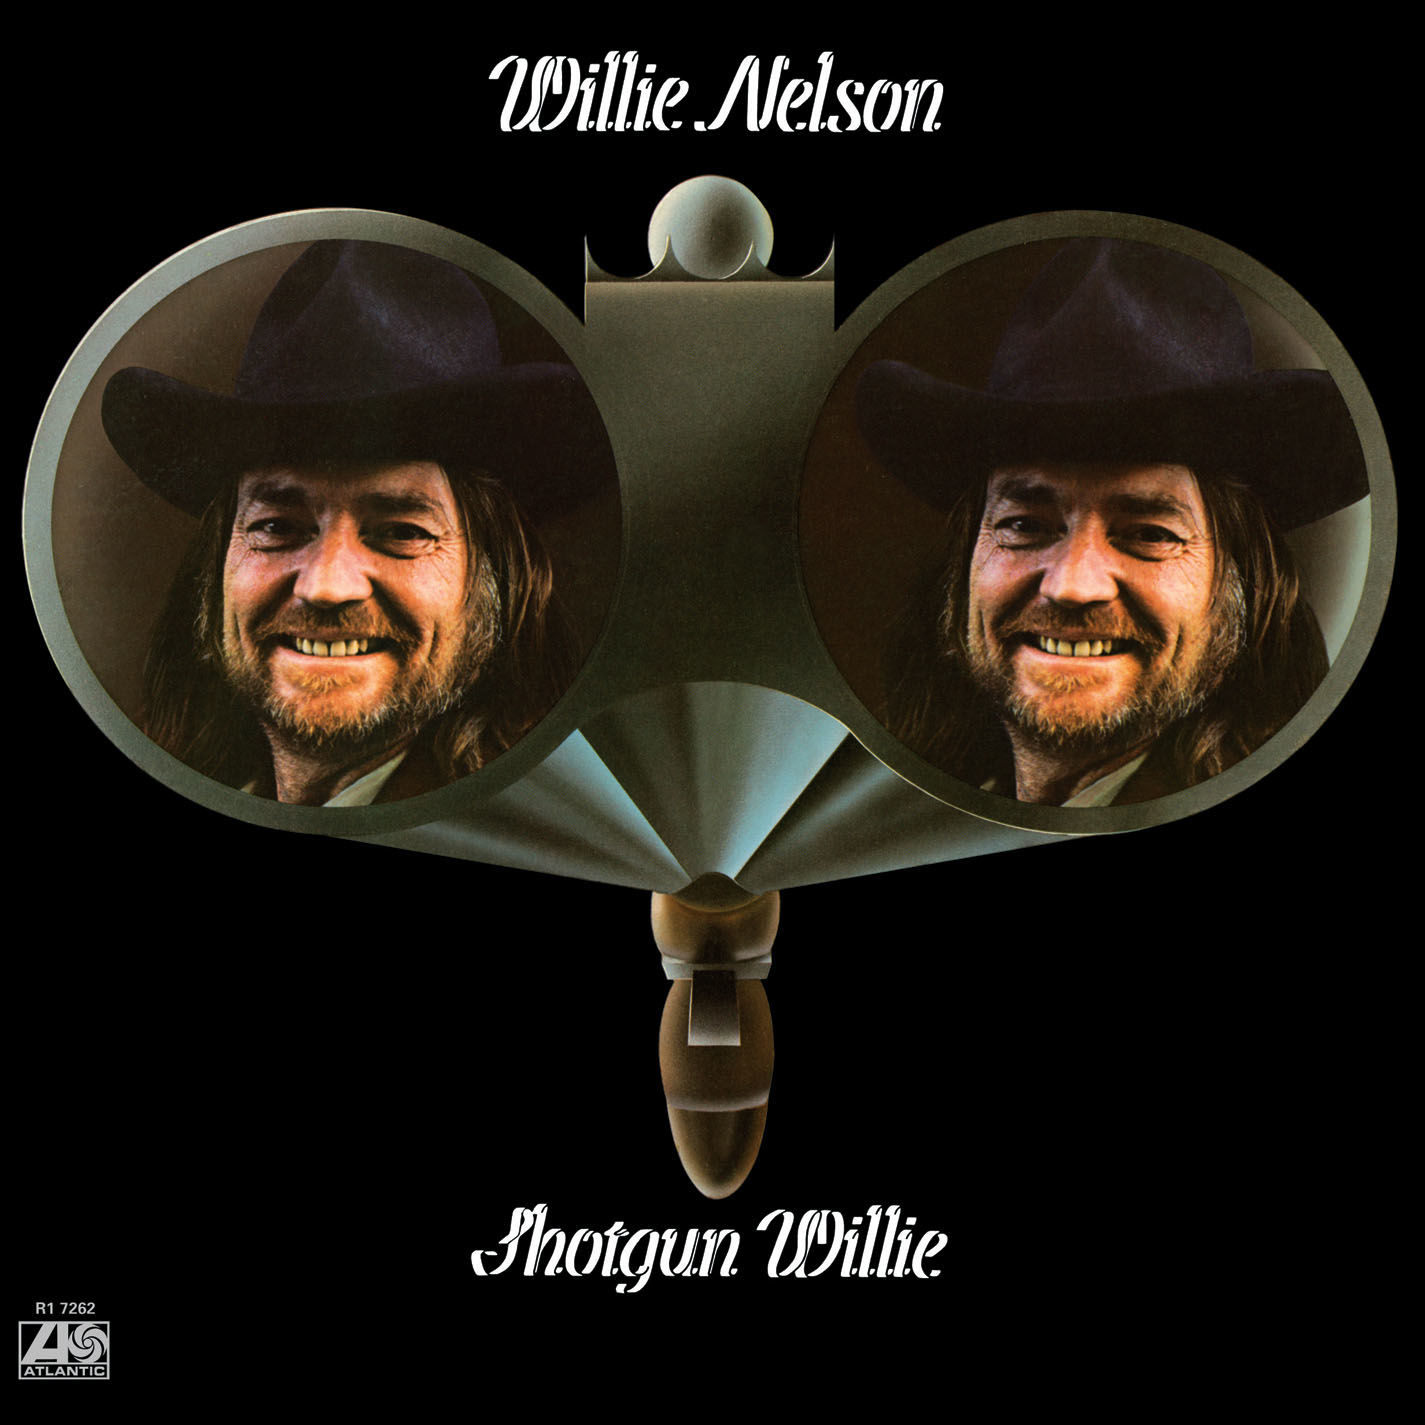 Willie Nelson – Shotgun Willie